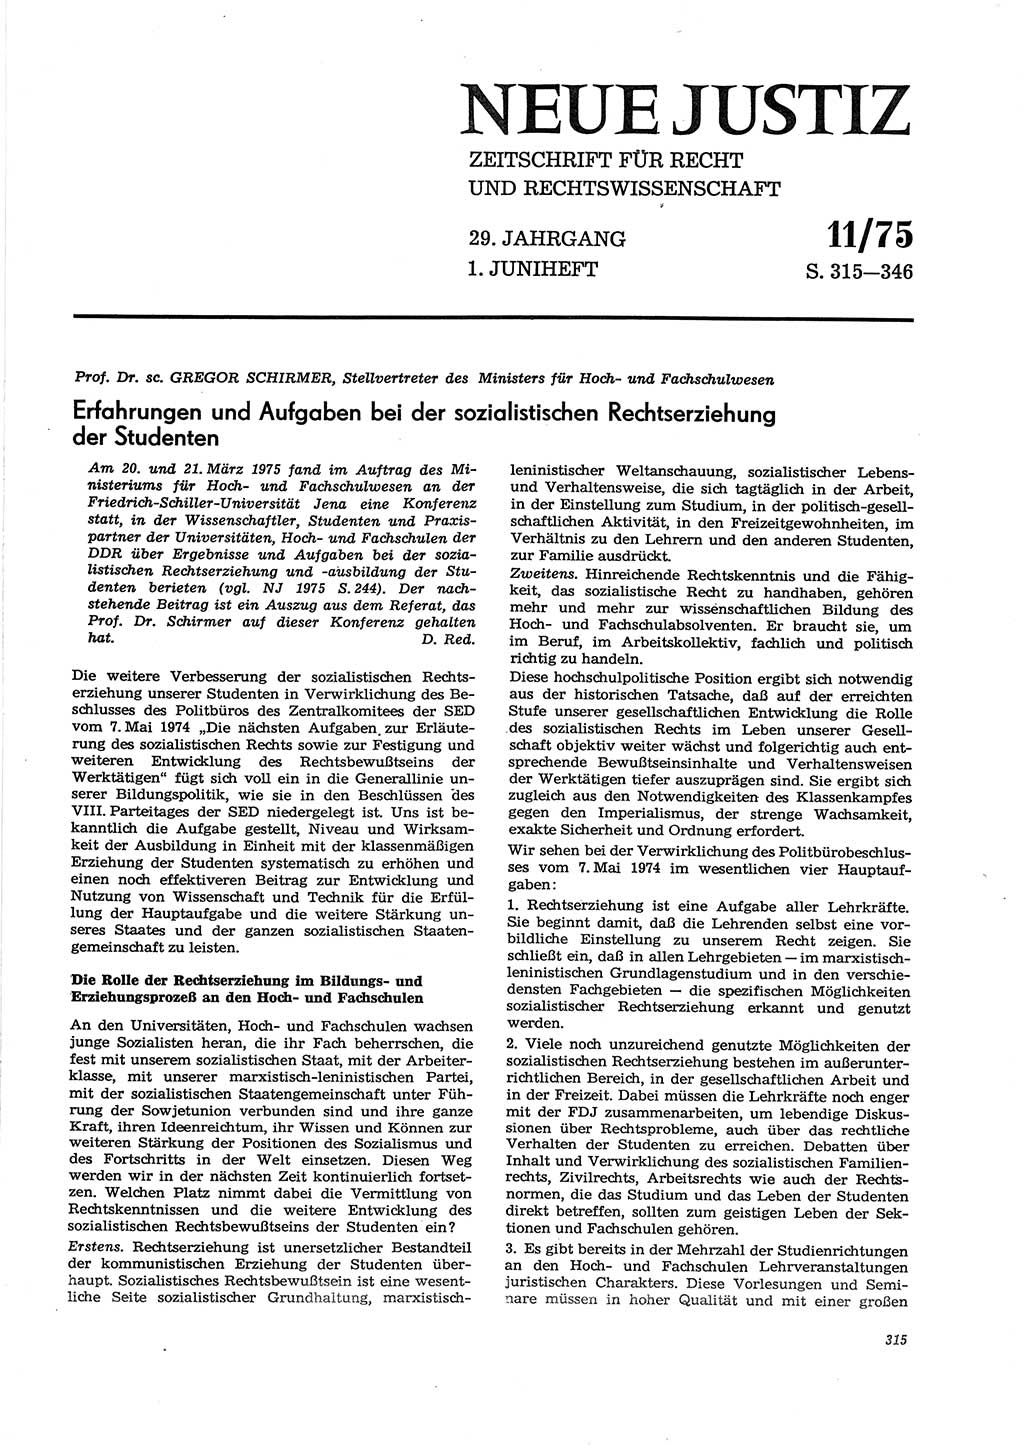 Neue Justiz (NJ), Zeitschrift für Recht und Rechtswissenschaft [Deutsche Demokratische Republik (DDR)], 29. Jahrgang 1975, Seite 315 (NJ DDR 1975, S. 315)